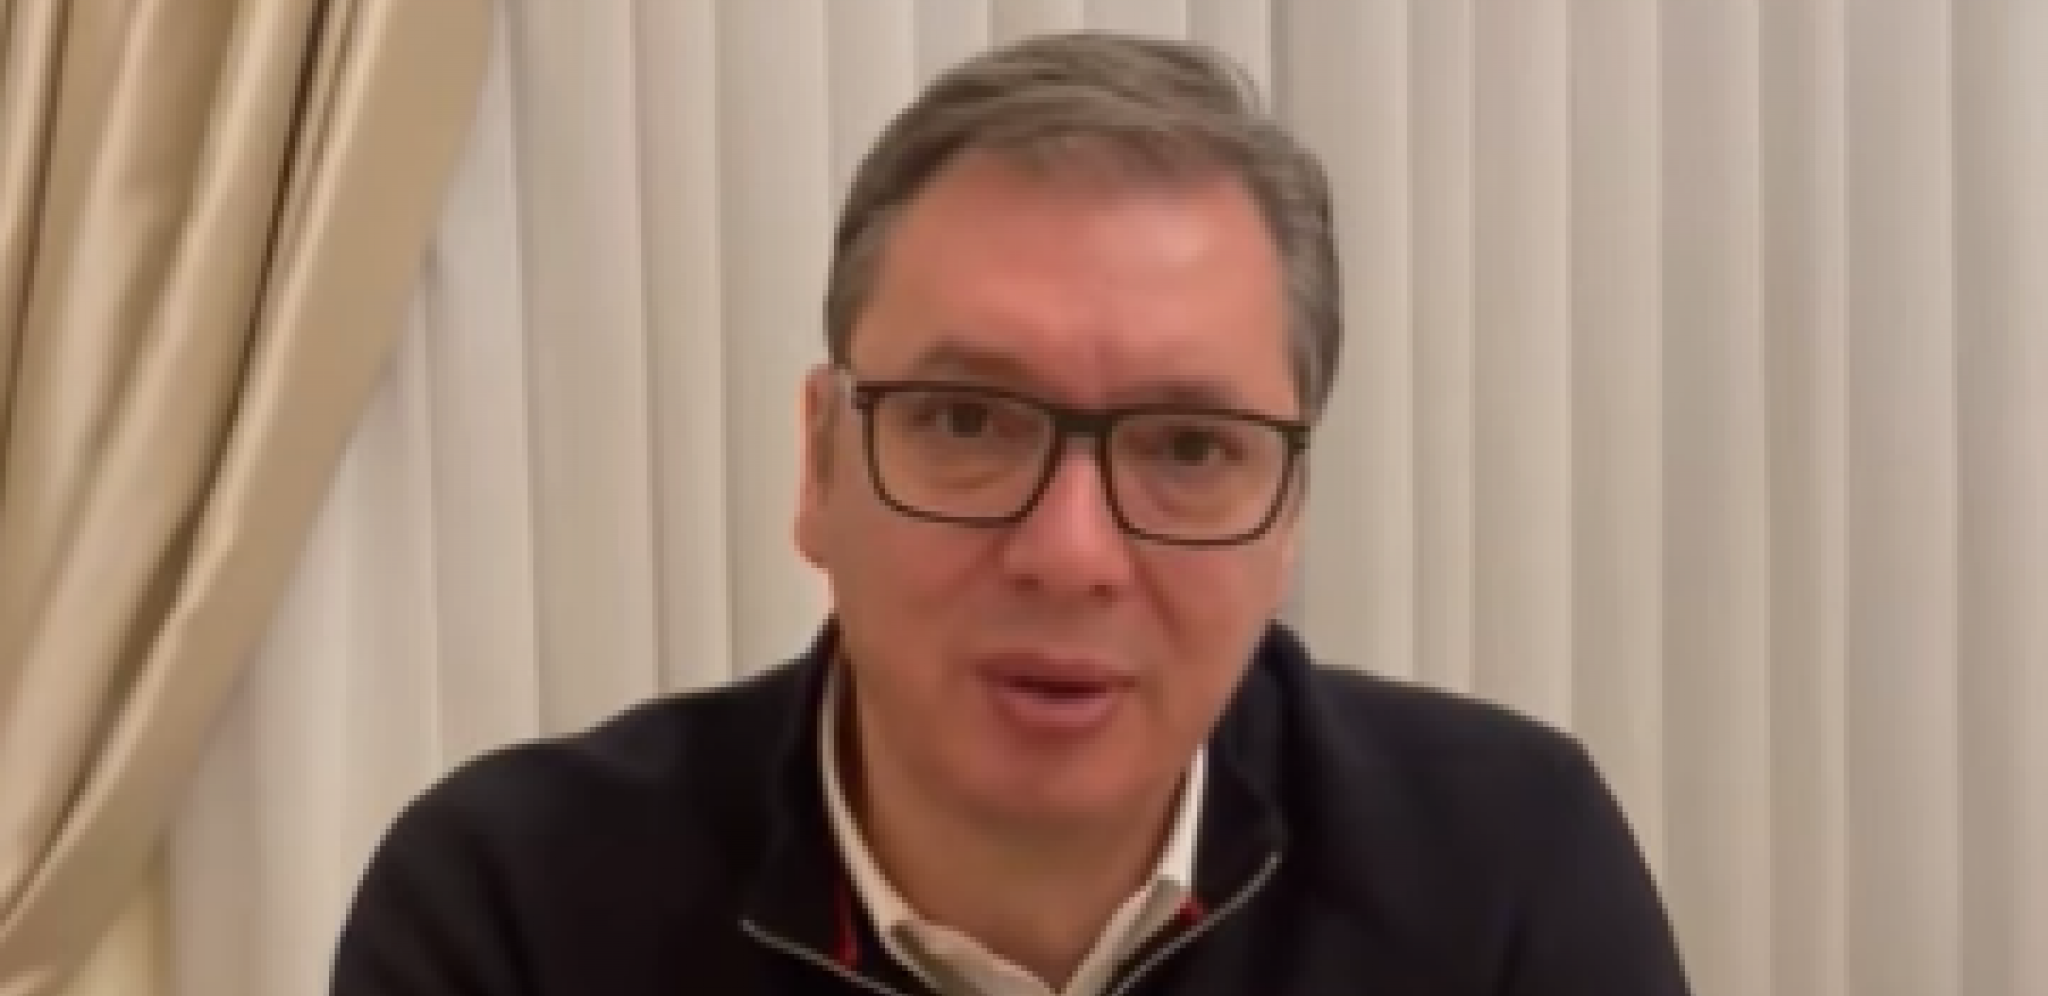 OPOZICIJA NE MARI ZA KOSOVO I METOHIJU Predsednik Vučić poslao snažnu poruku: Srbiju ne možete da savladate! (VIDEO)